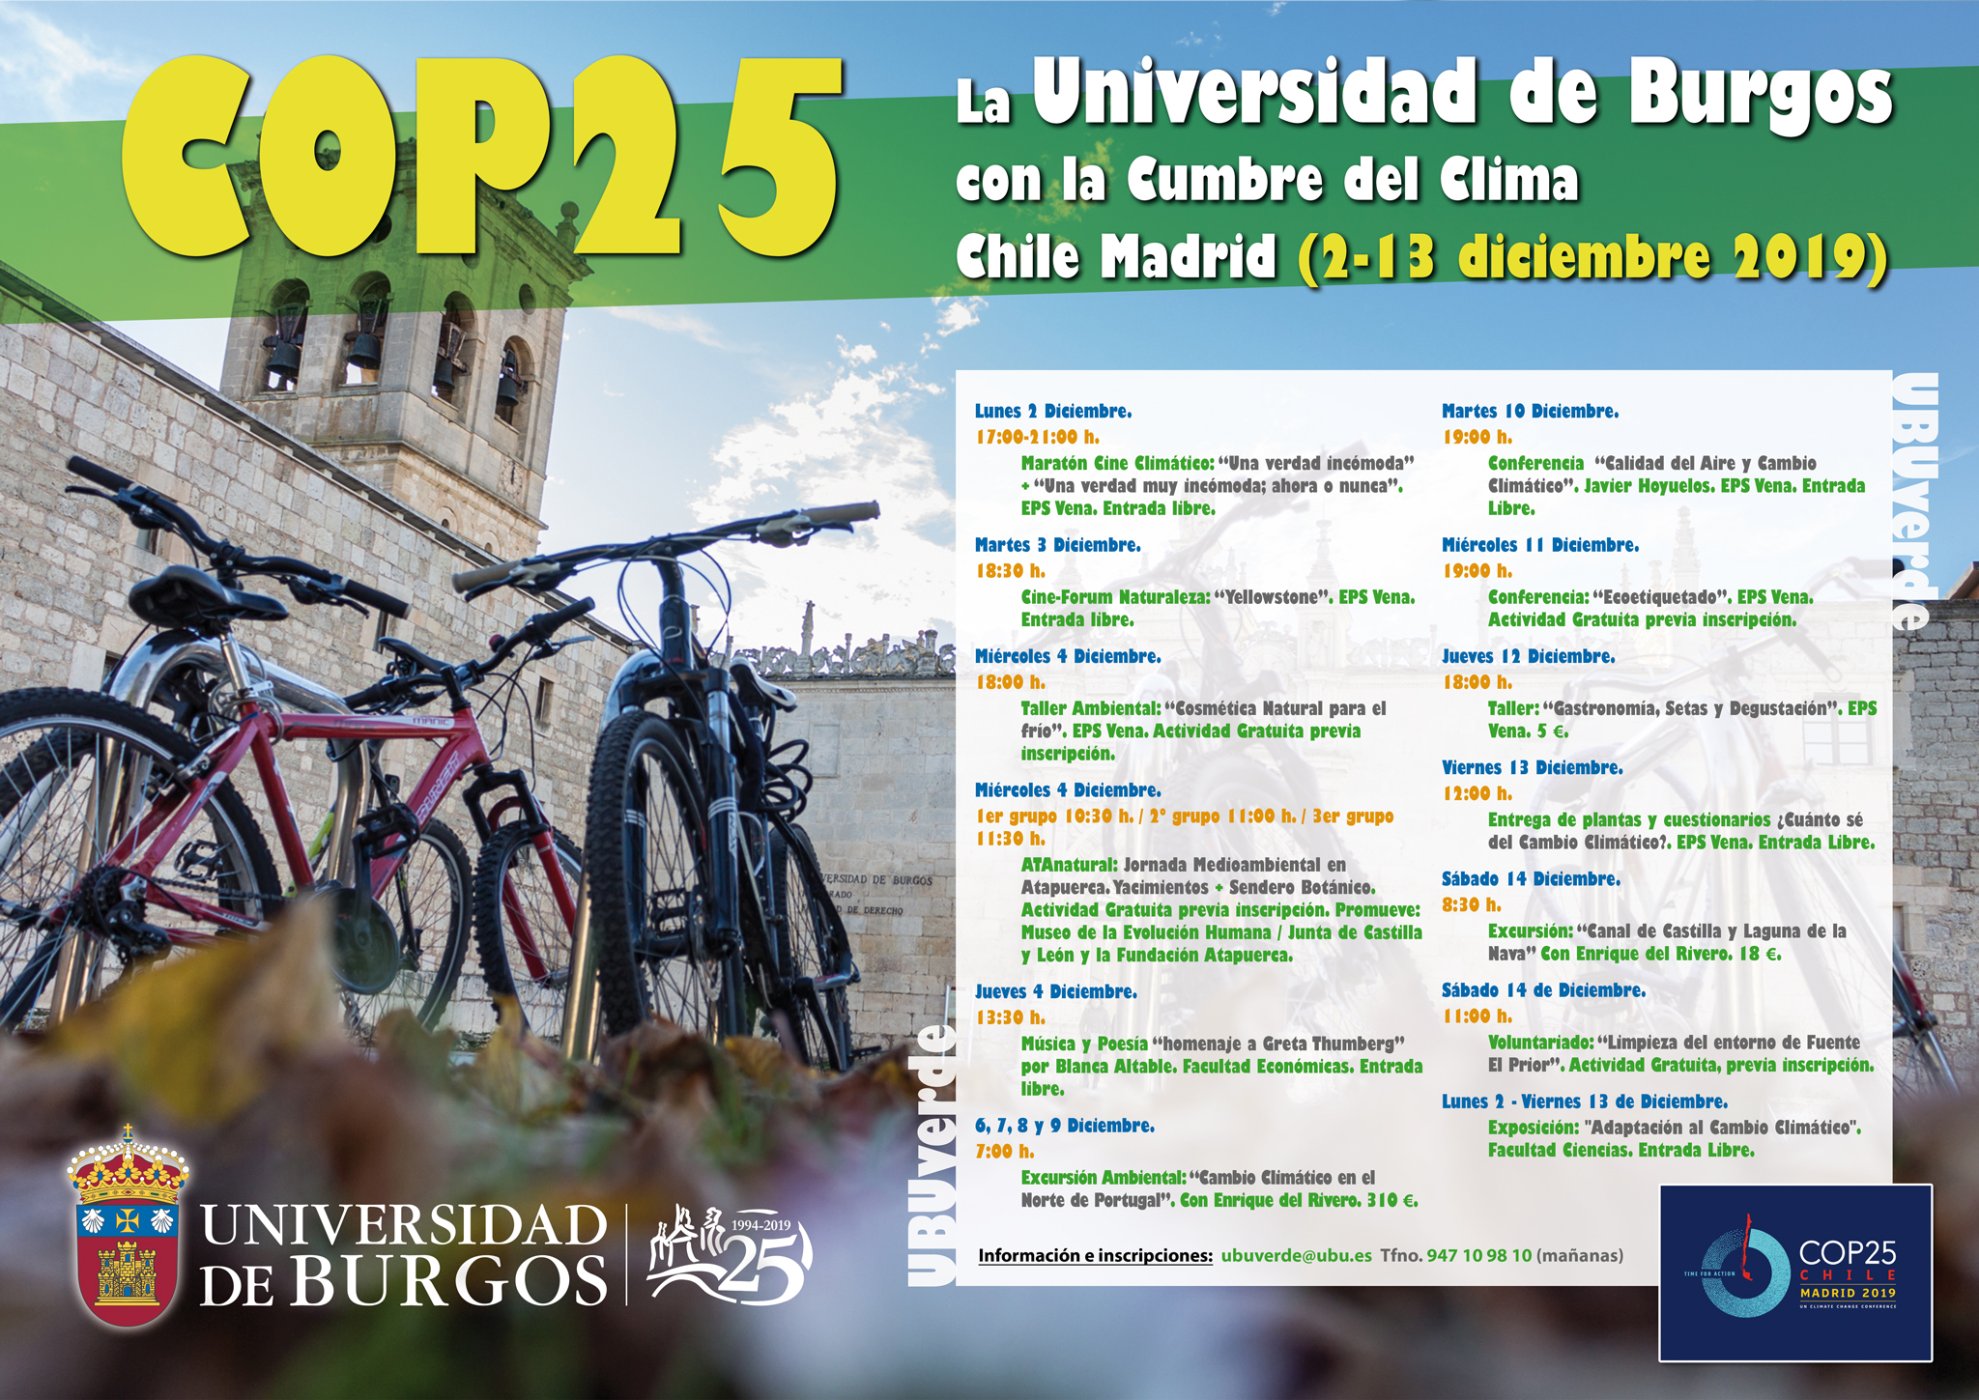 La Universidad de Burgos participa en la Cumbre del Clima COP25